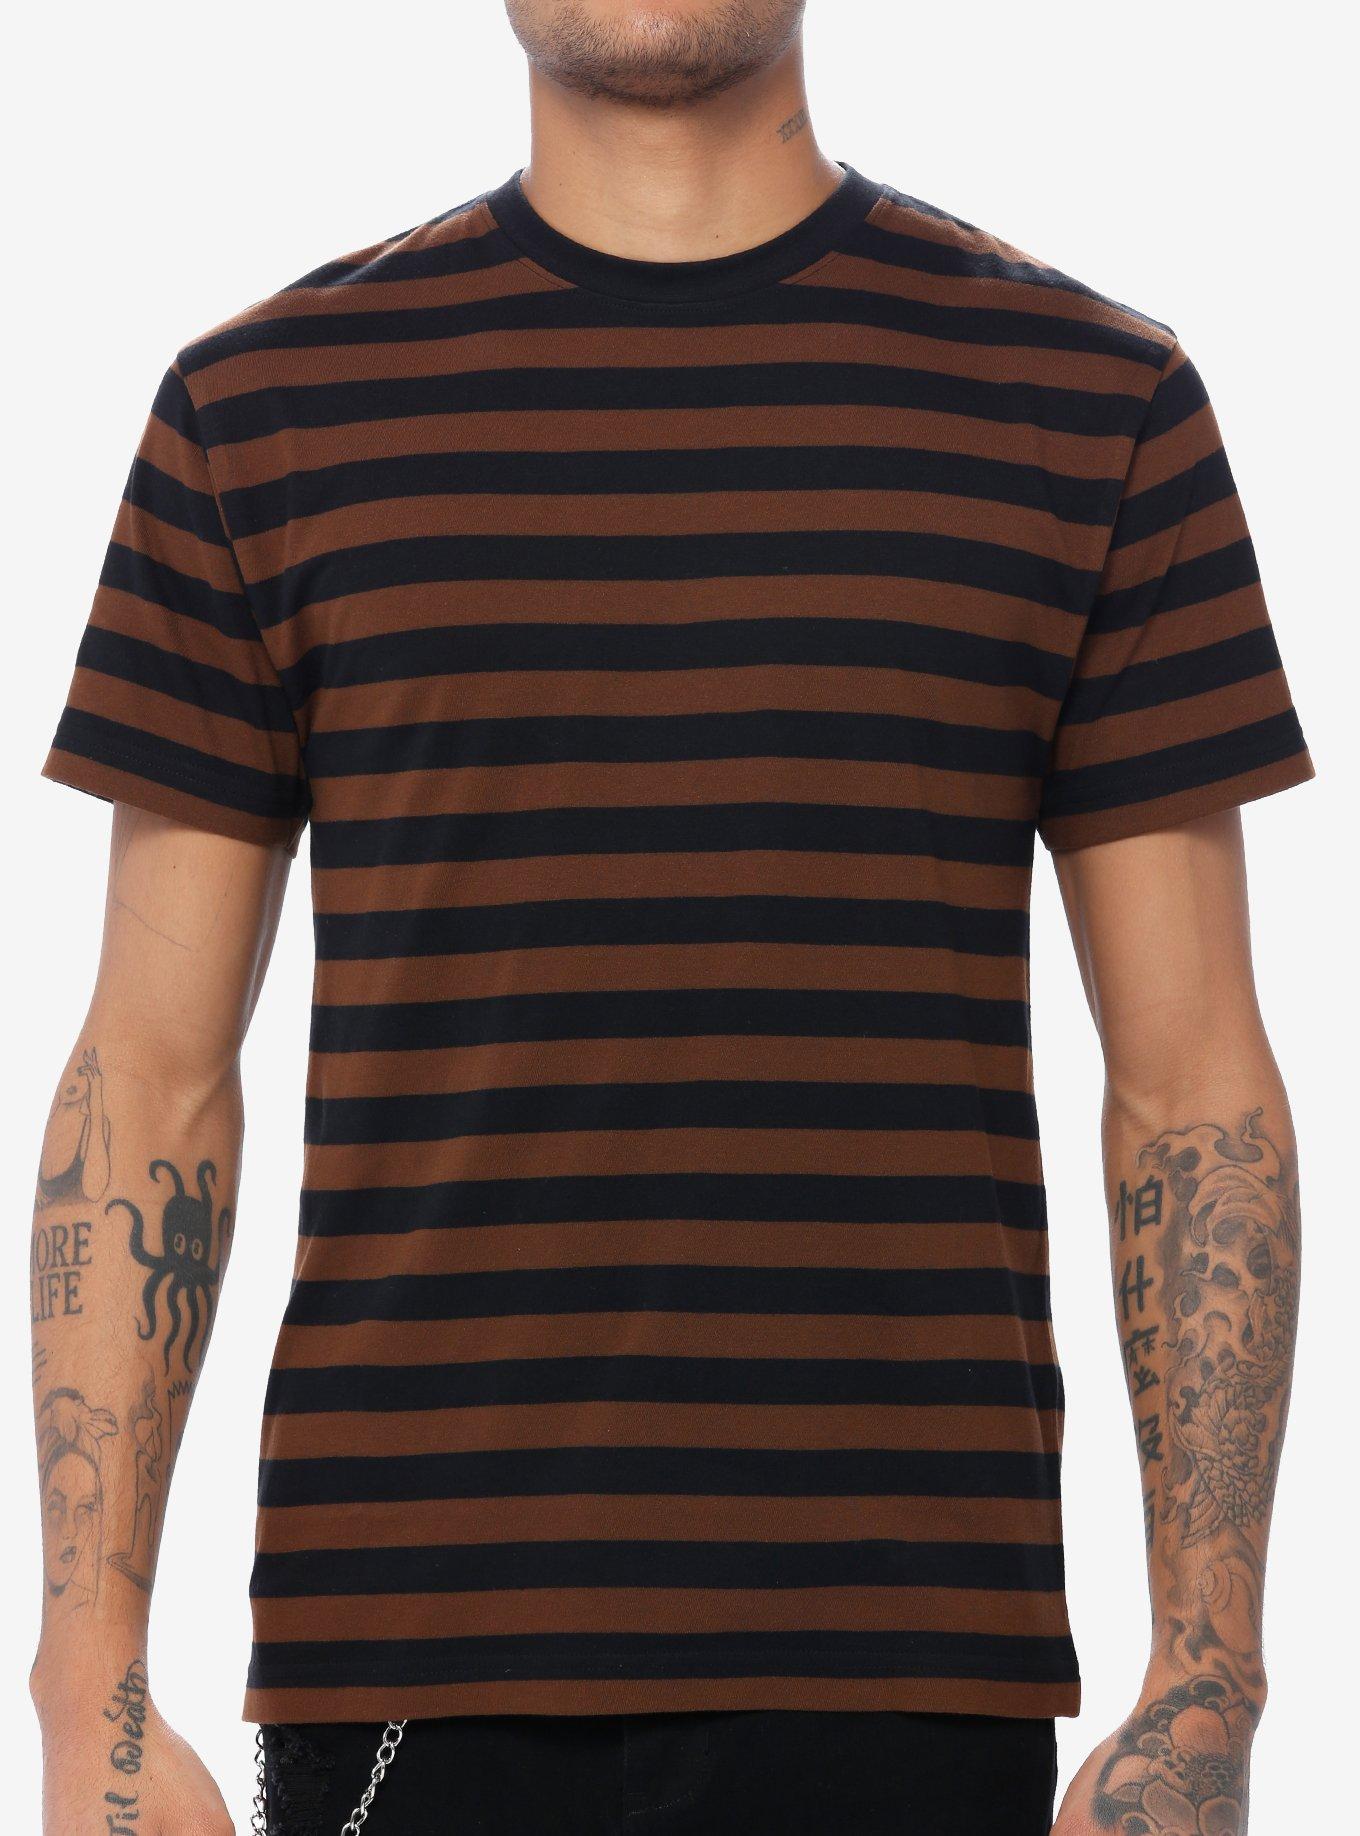 Black & Brown Stripe T-Shirt, BROWN, hi-res